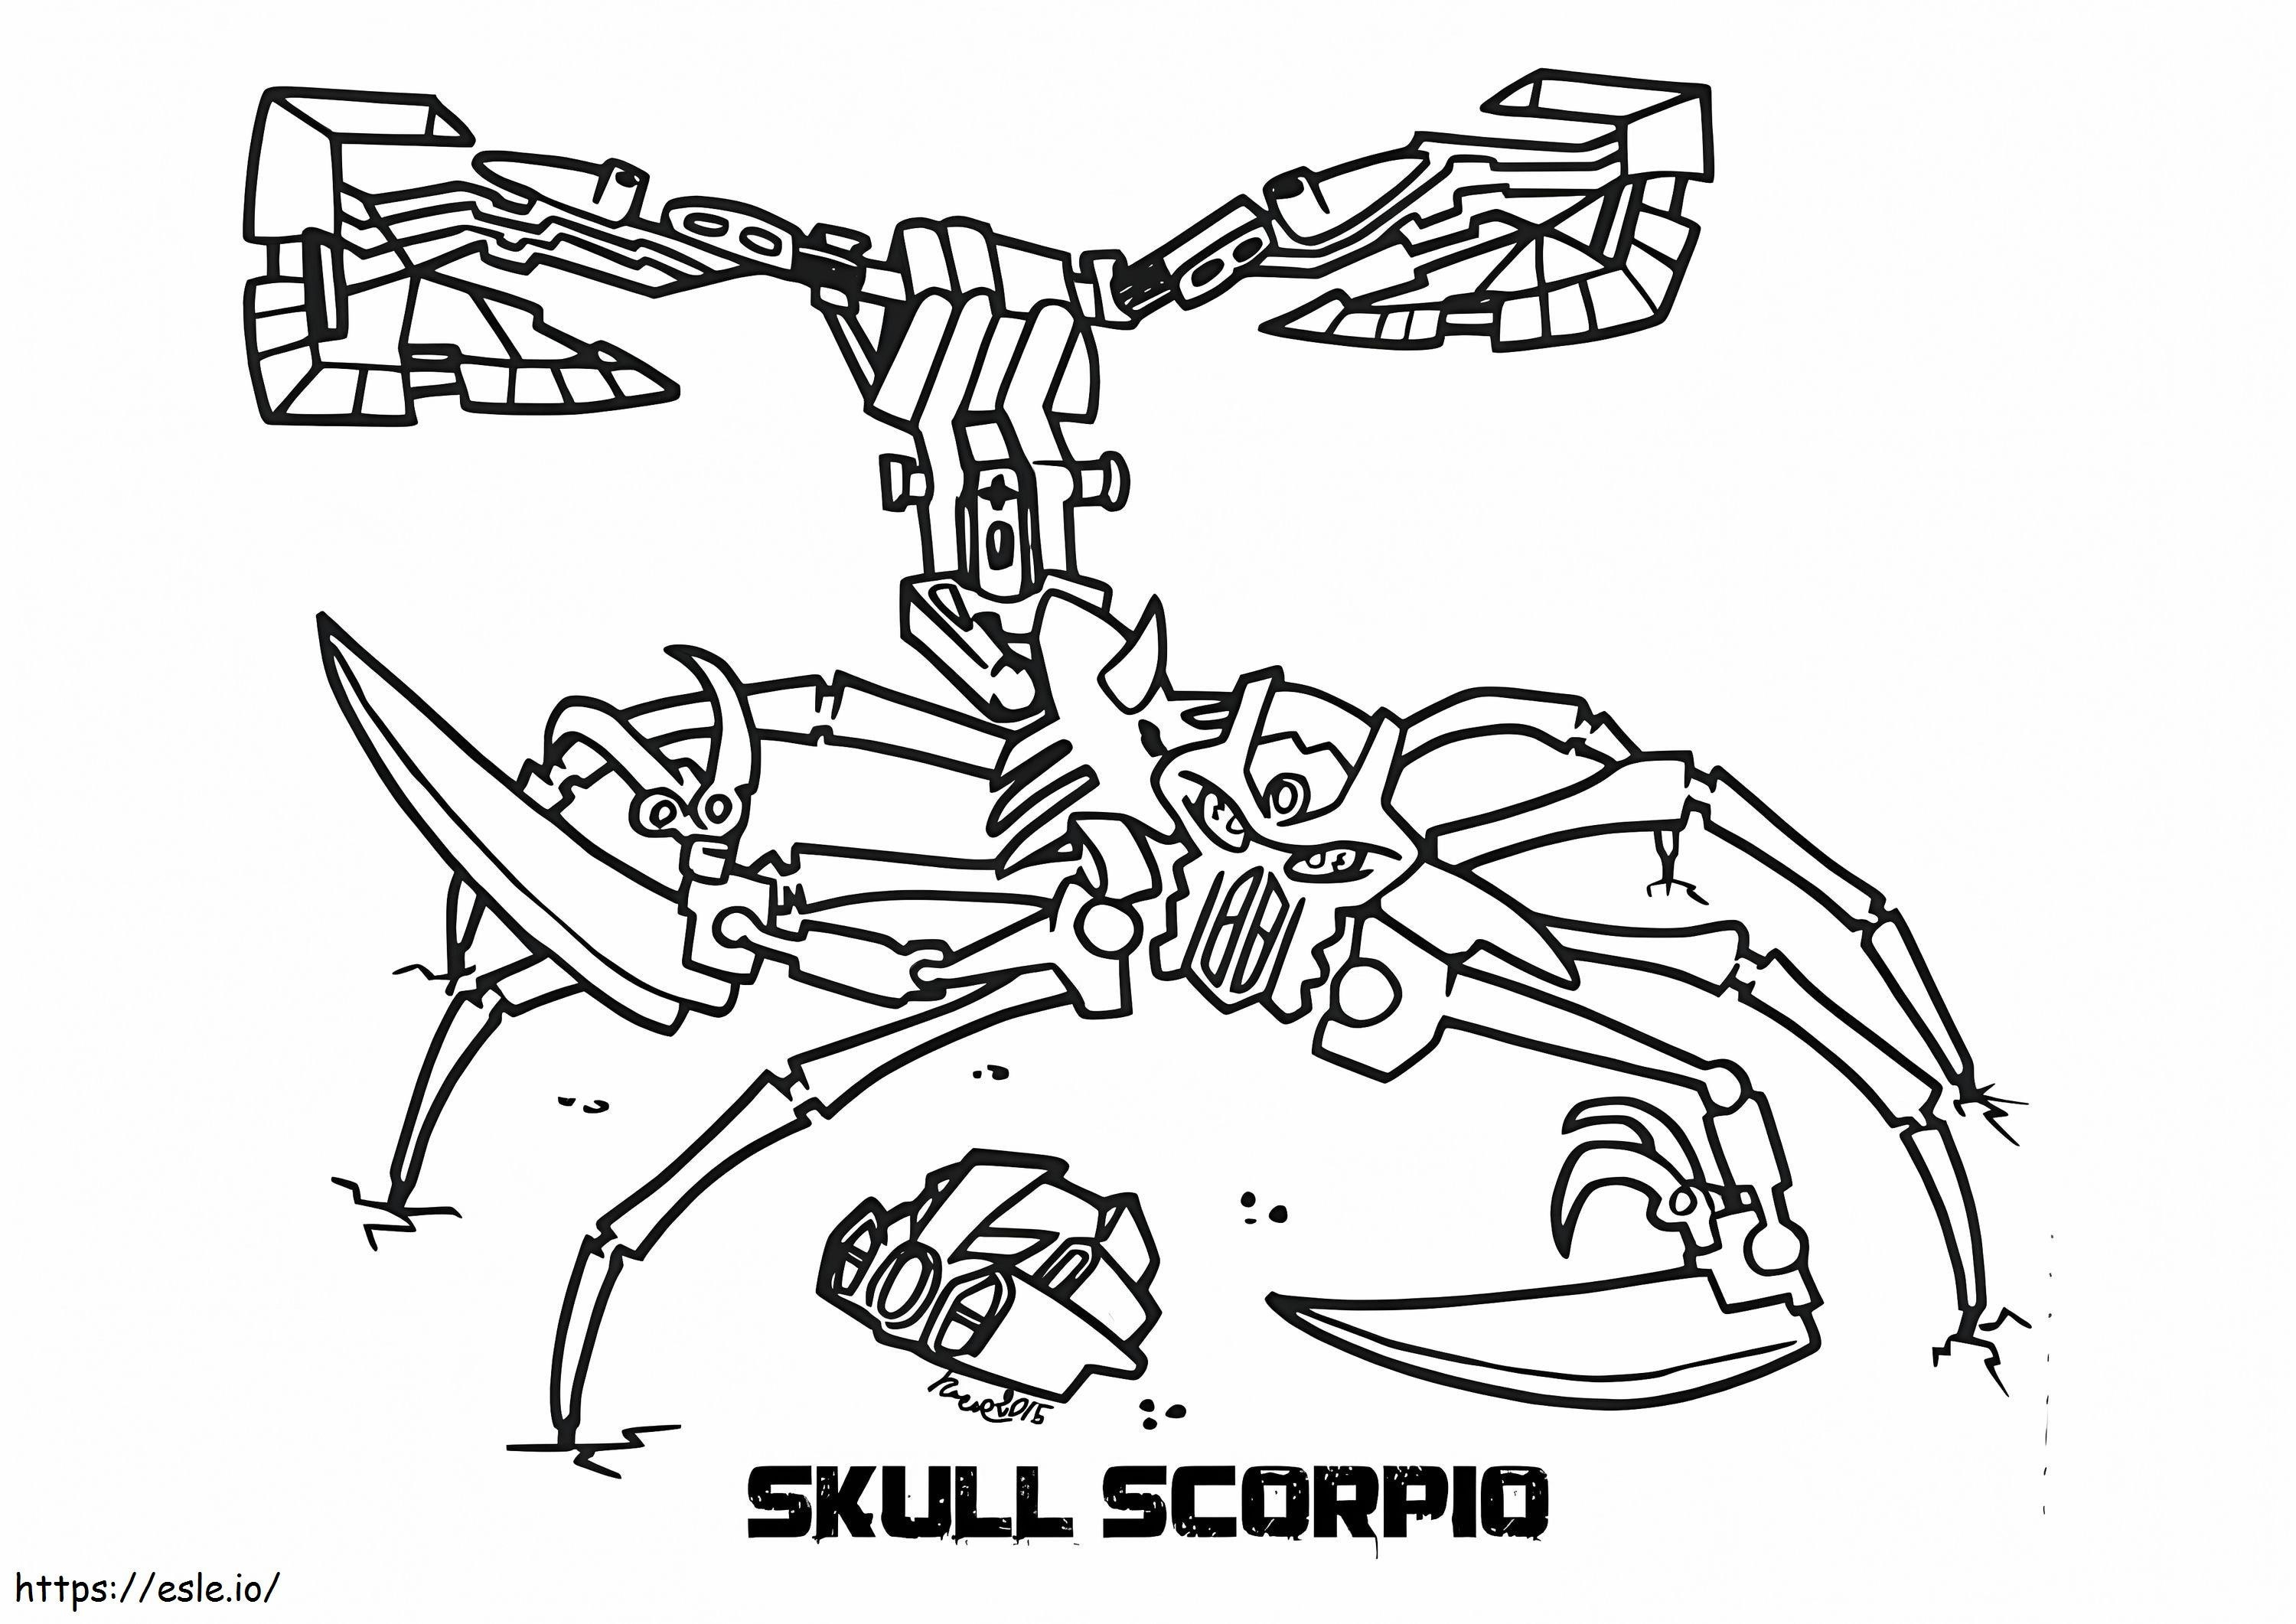 Schädel-Skorpion-Bionicle ausmalbilder